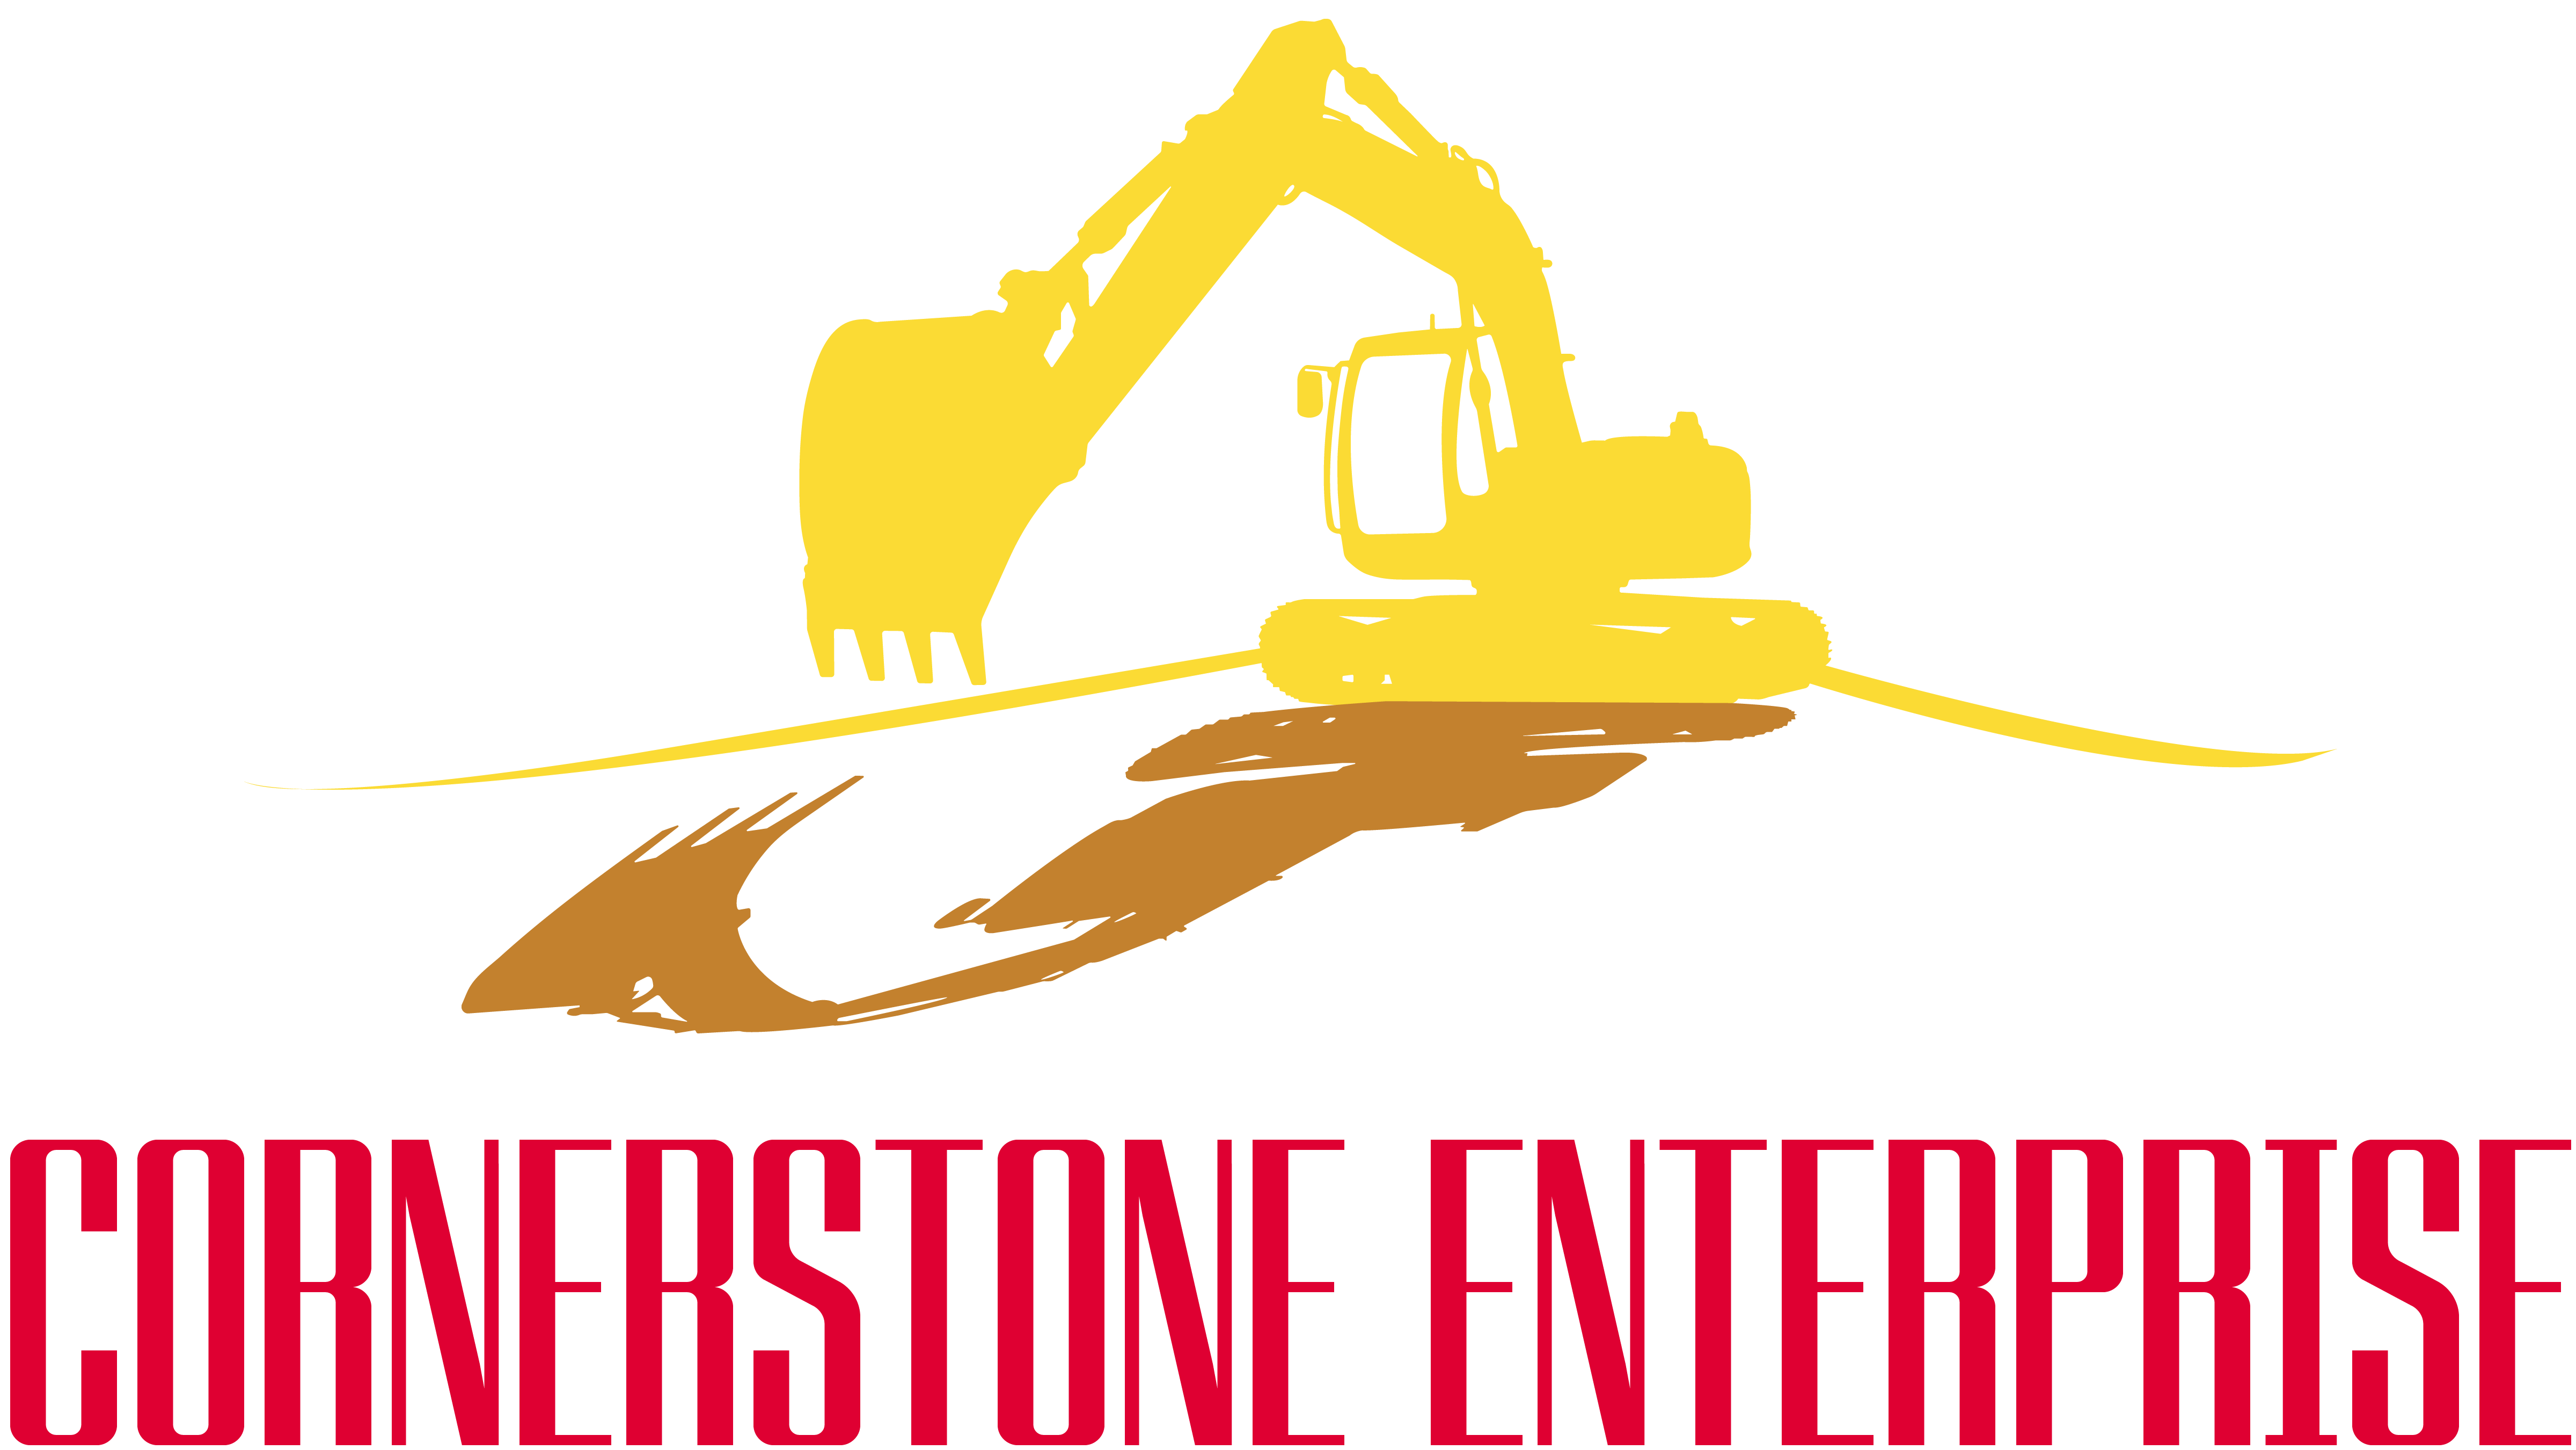 A Cornerstone Enterprise, LLC.